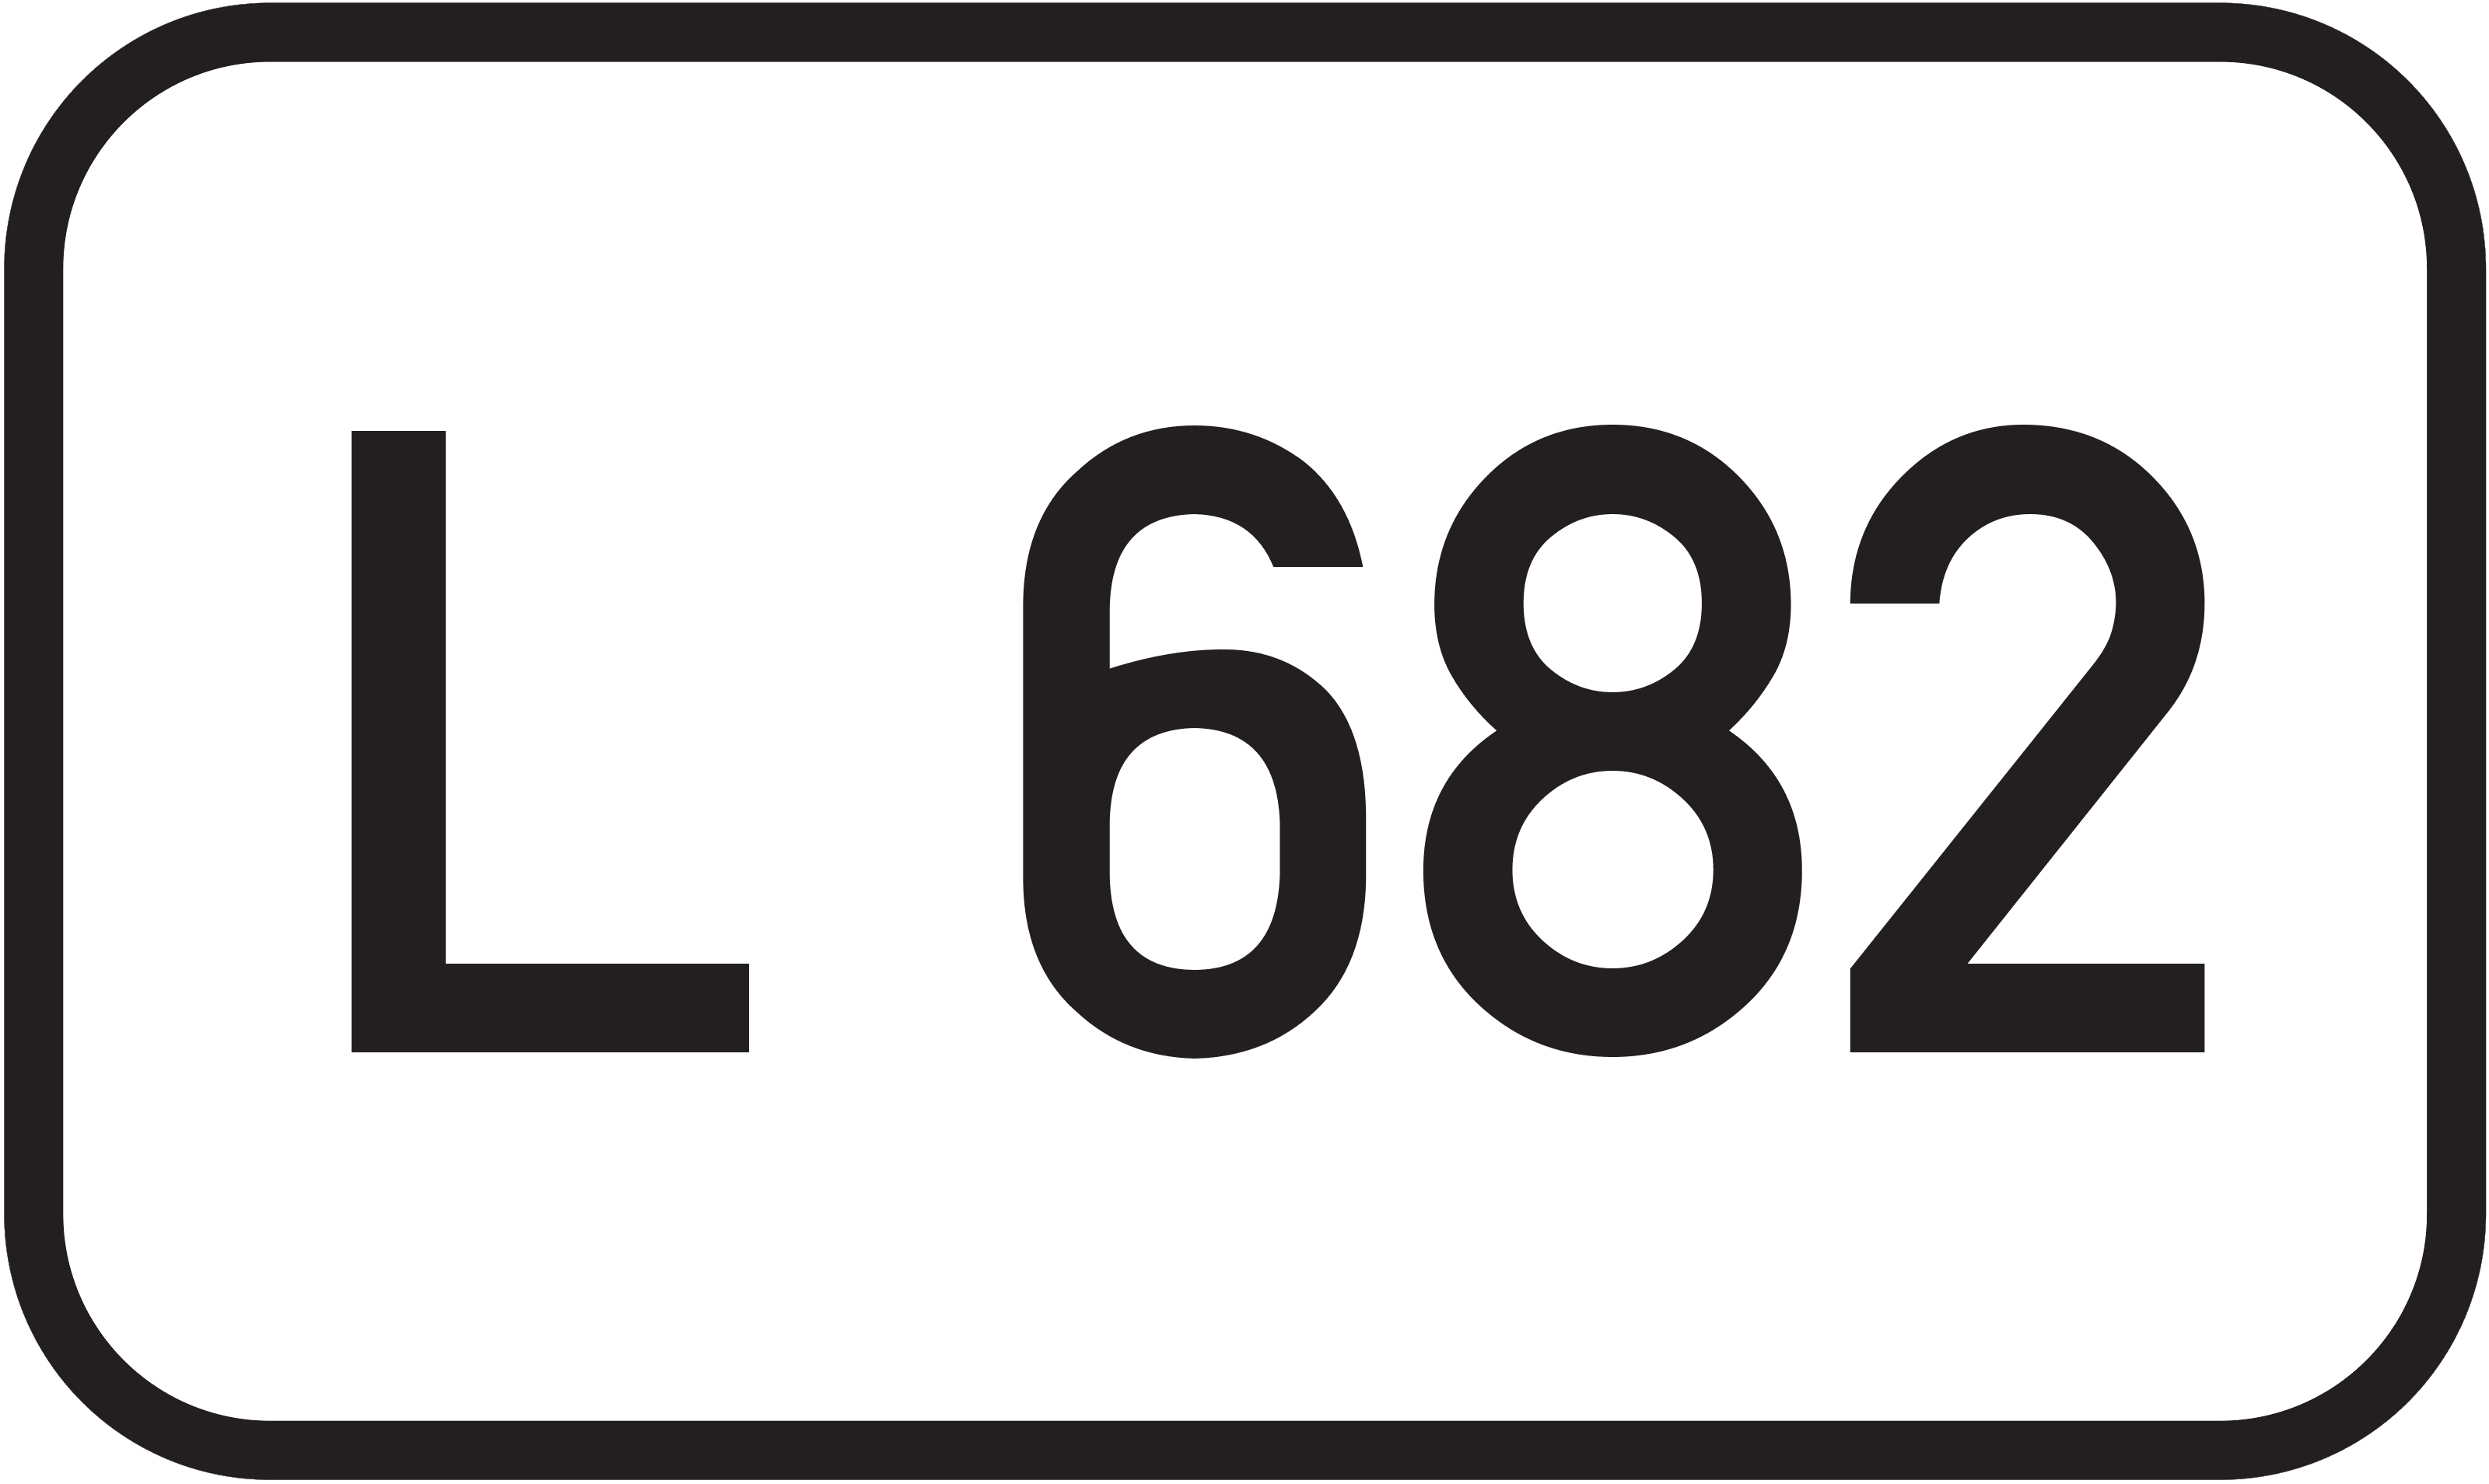 Landesstraße L 682